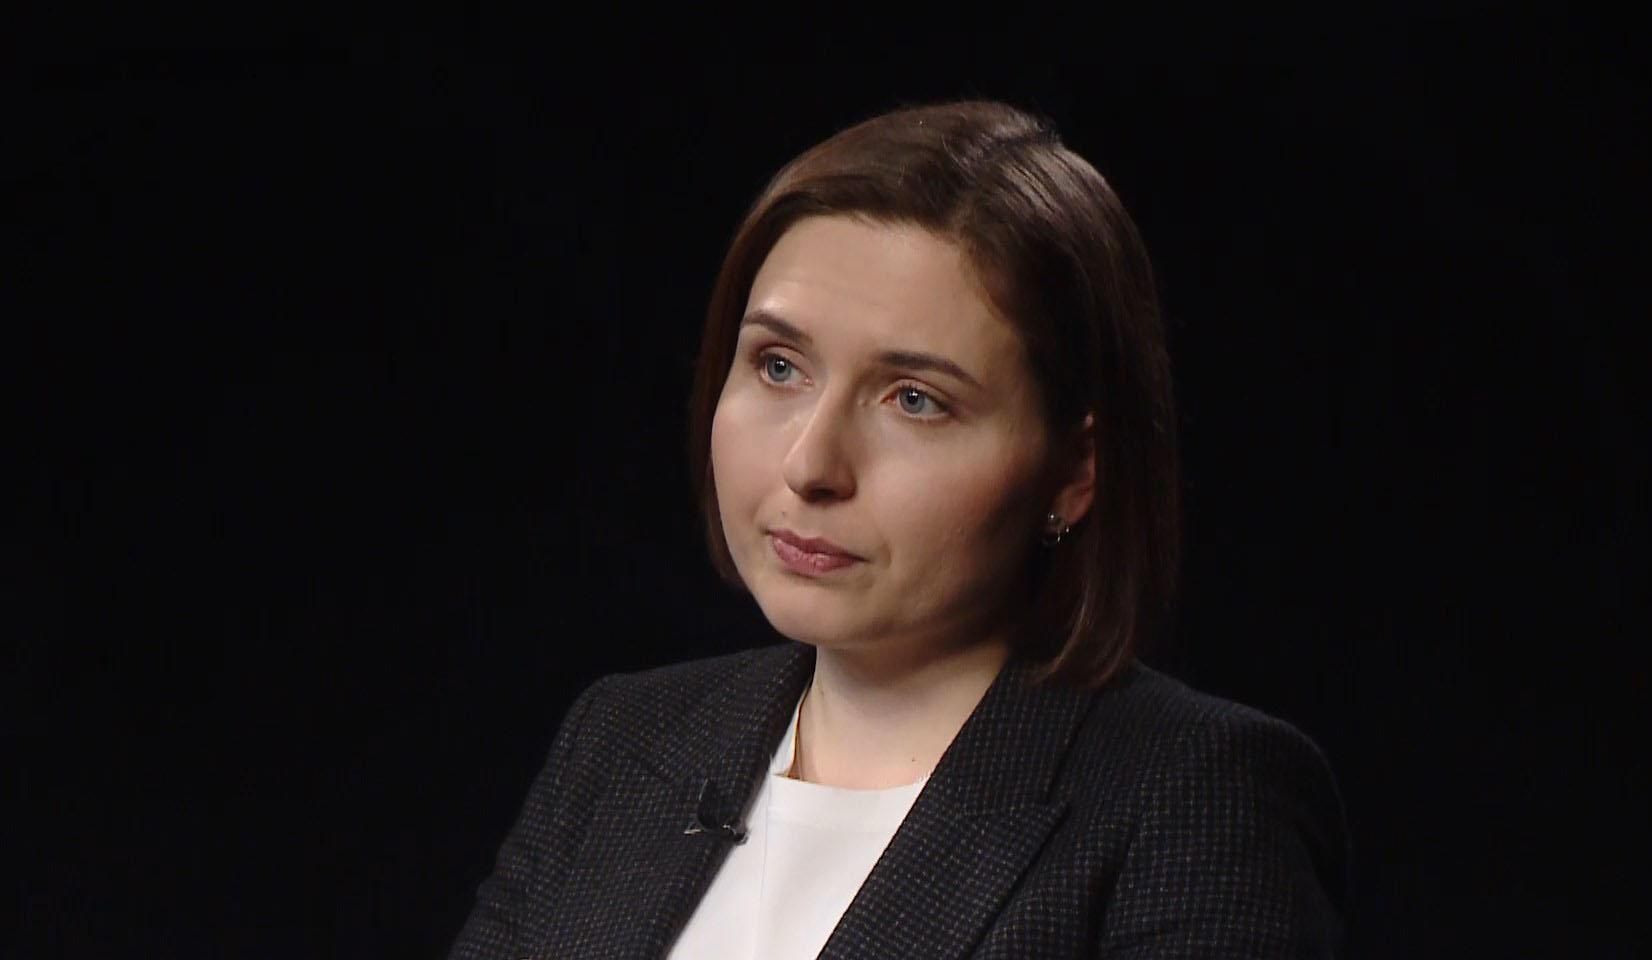 Чому Новосад не залишилася в уряді Шмигаля: відверте інтерв'ю з ексміністеркою